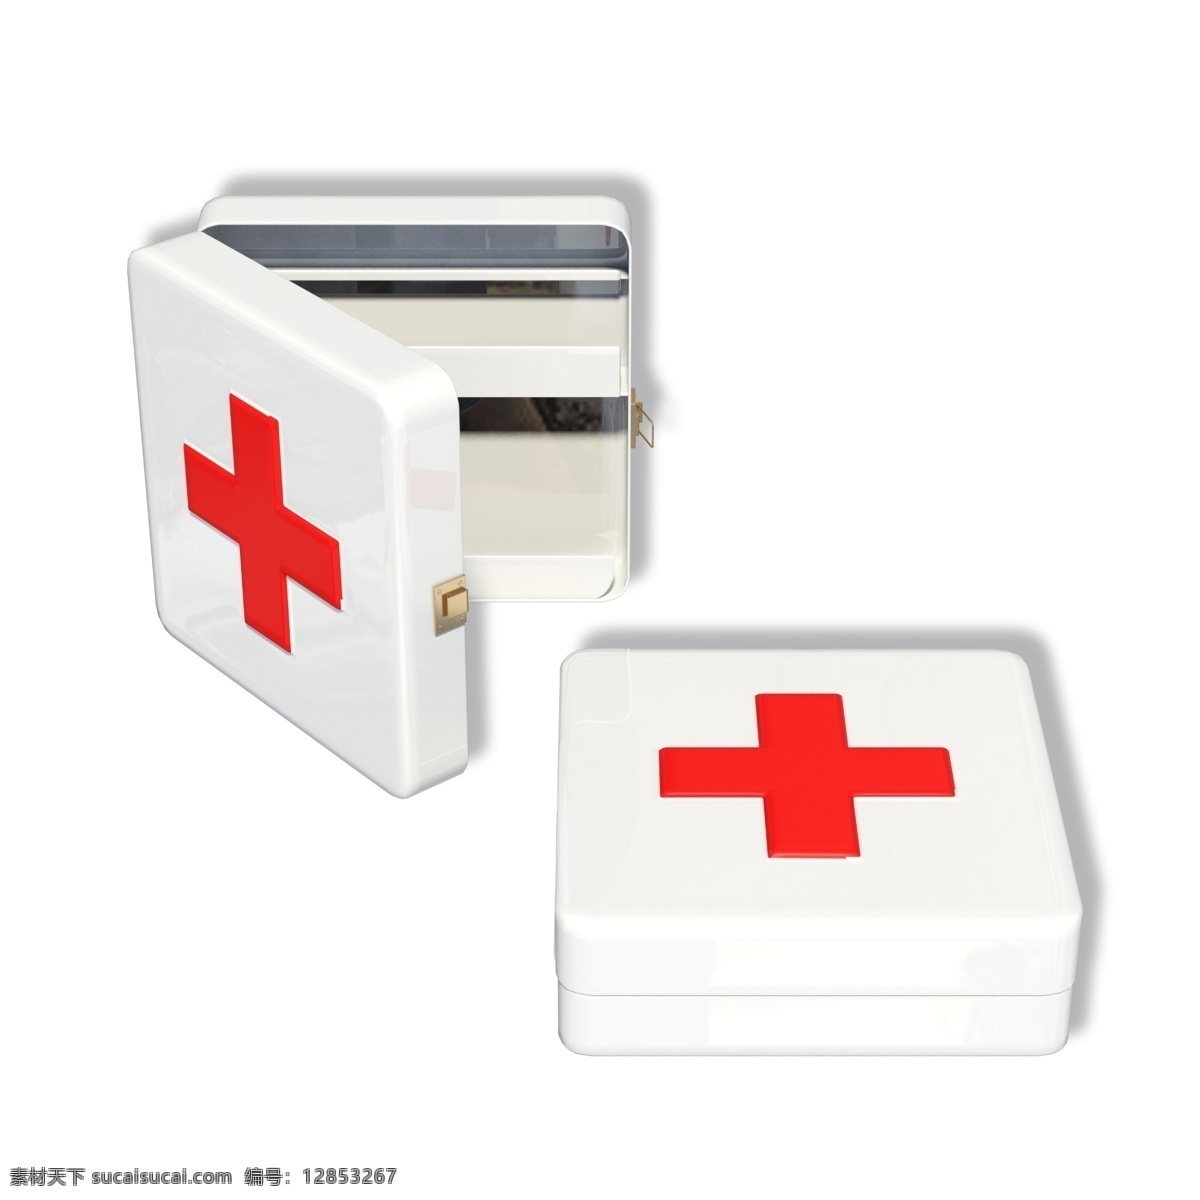 小型 医疗器械 盒子 医药箱 急救箱 医疗盒子